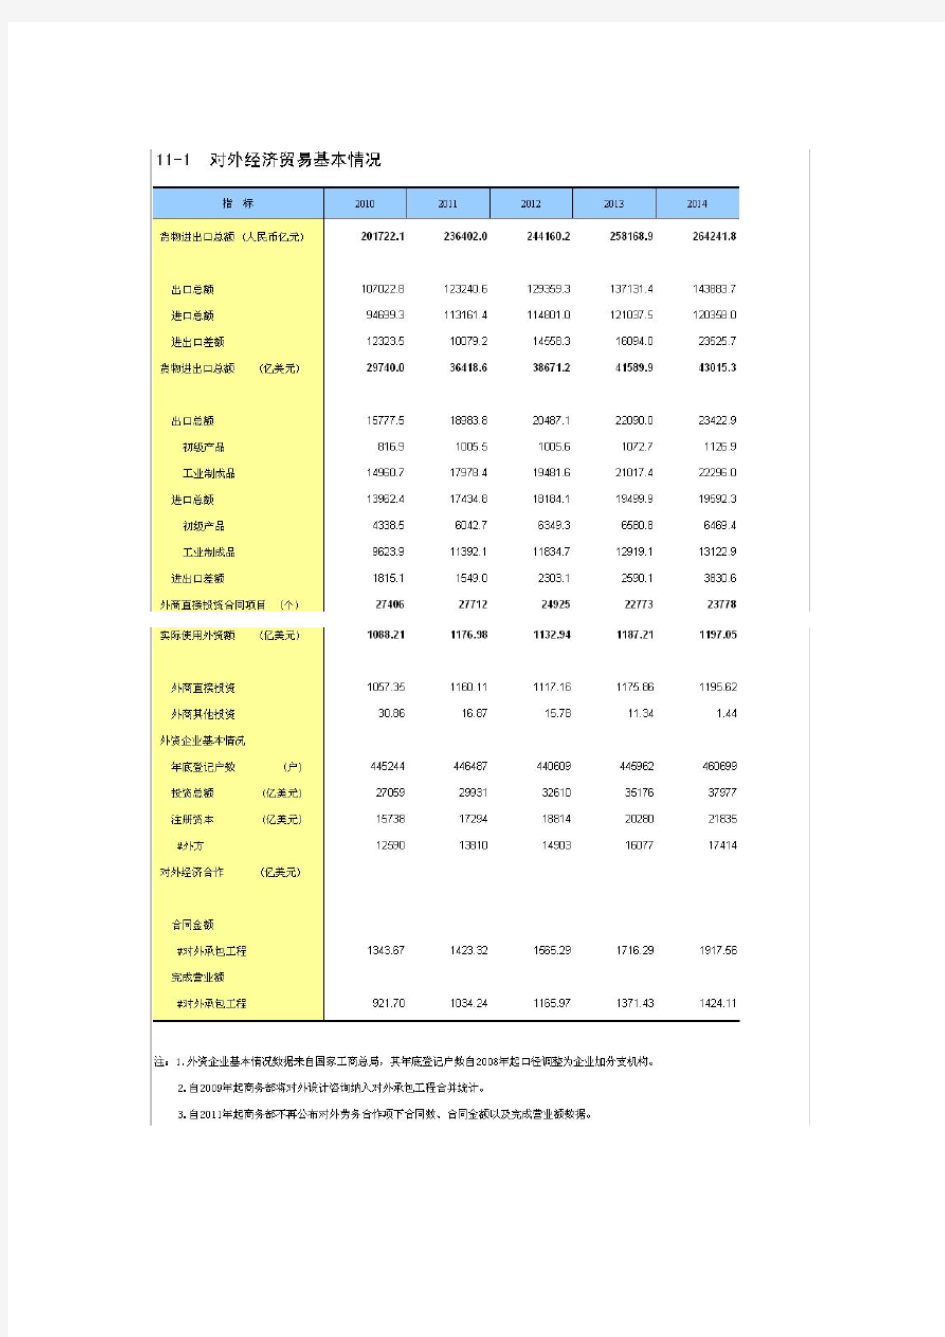 中国统计年鉴-2015年(11)